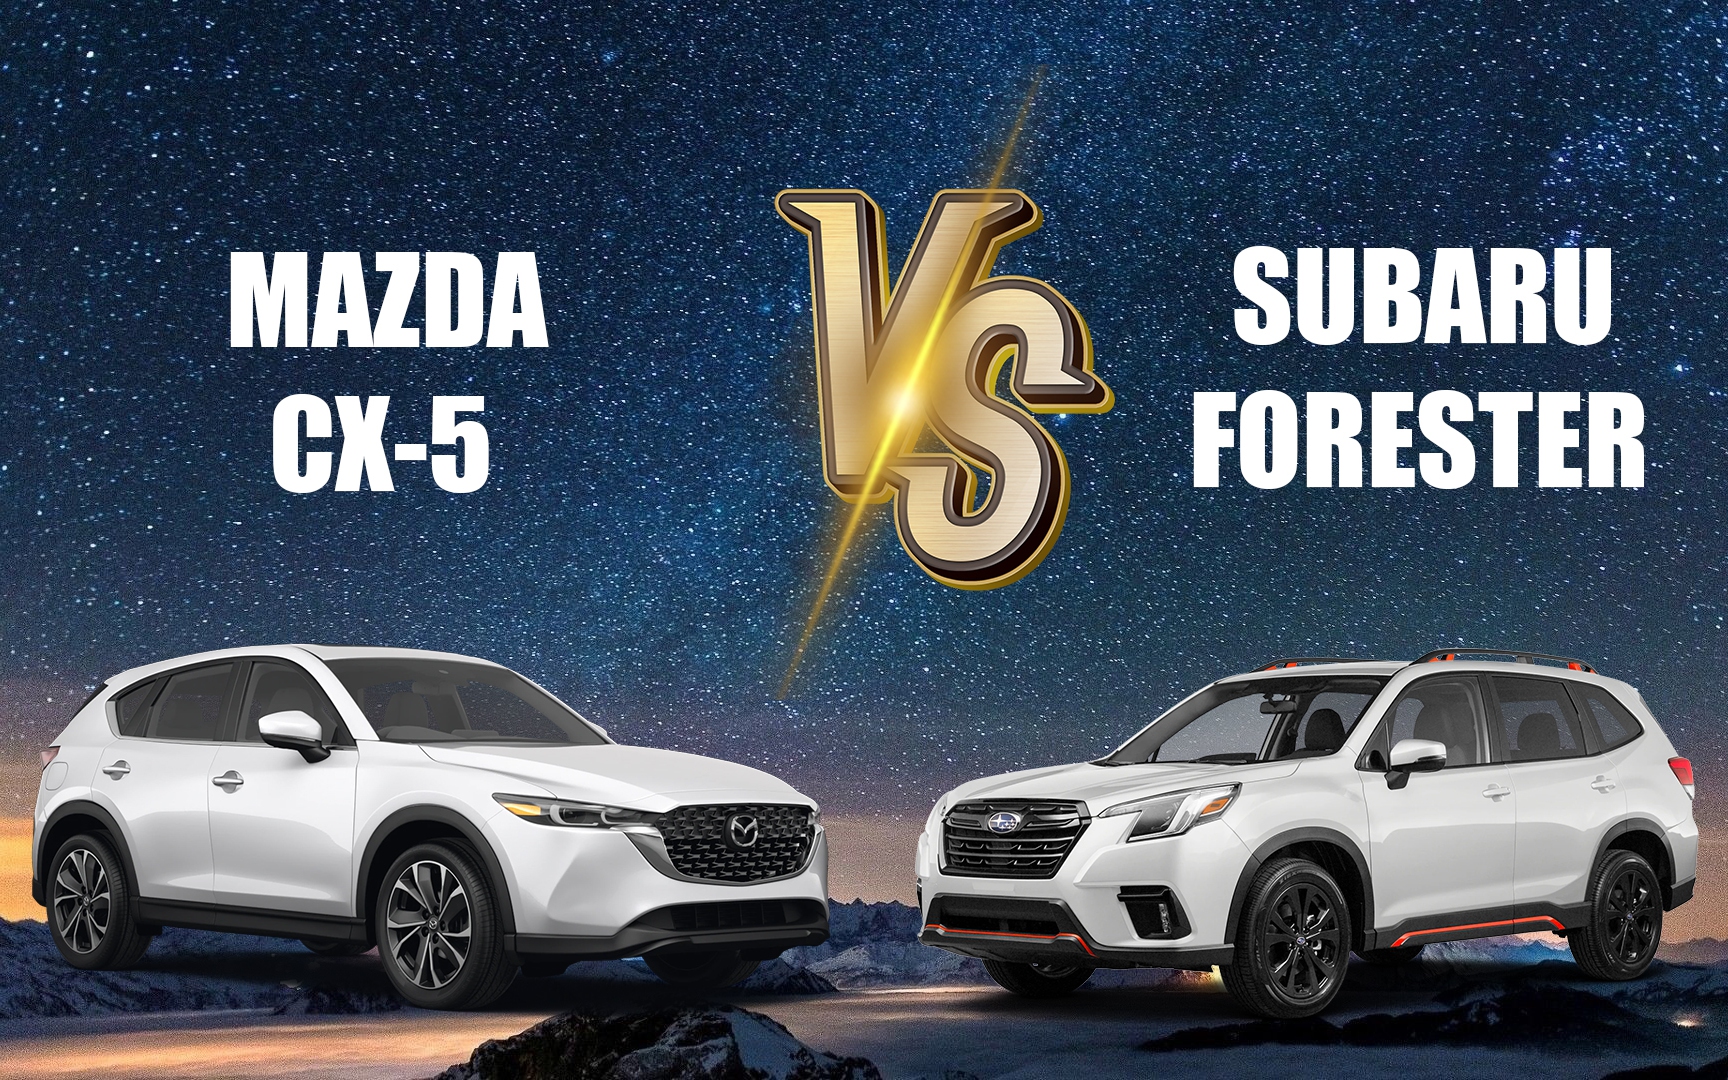 Tầm giá dưới 1 tỷ đồng, Mazda CX-5 hay Subaru Forester cao cấp nhất ấn tượng hơn?